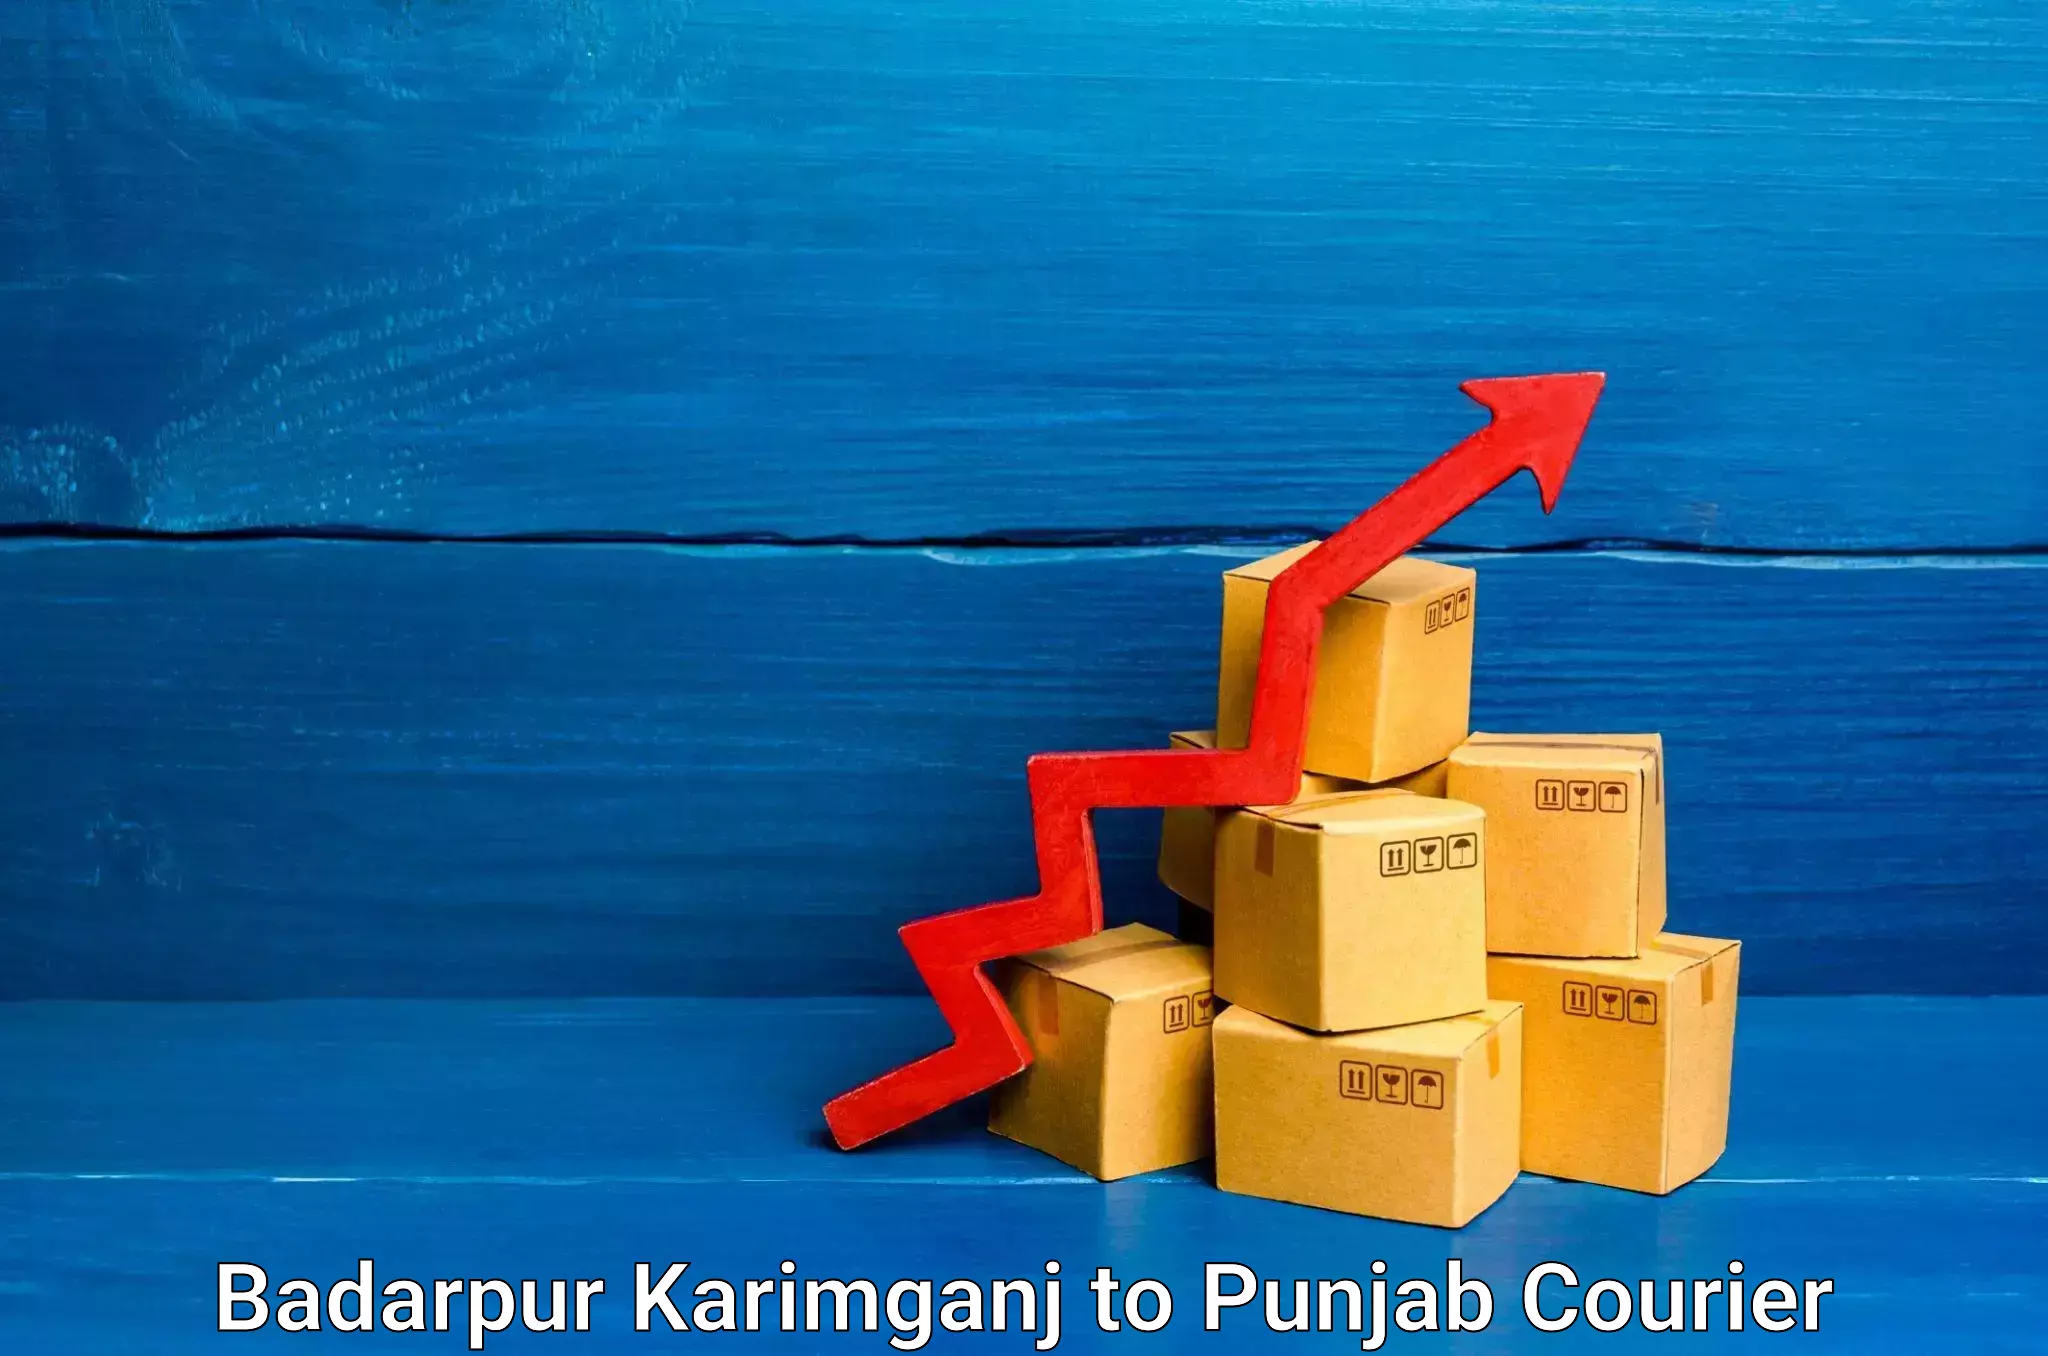 Global parcel delivery Badarpur Karimganj to Ludhiana